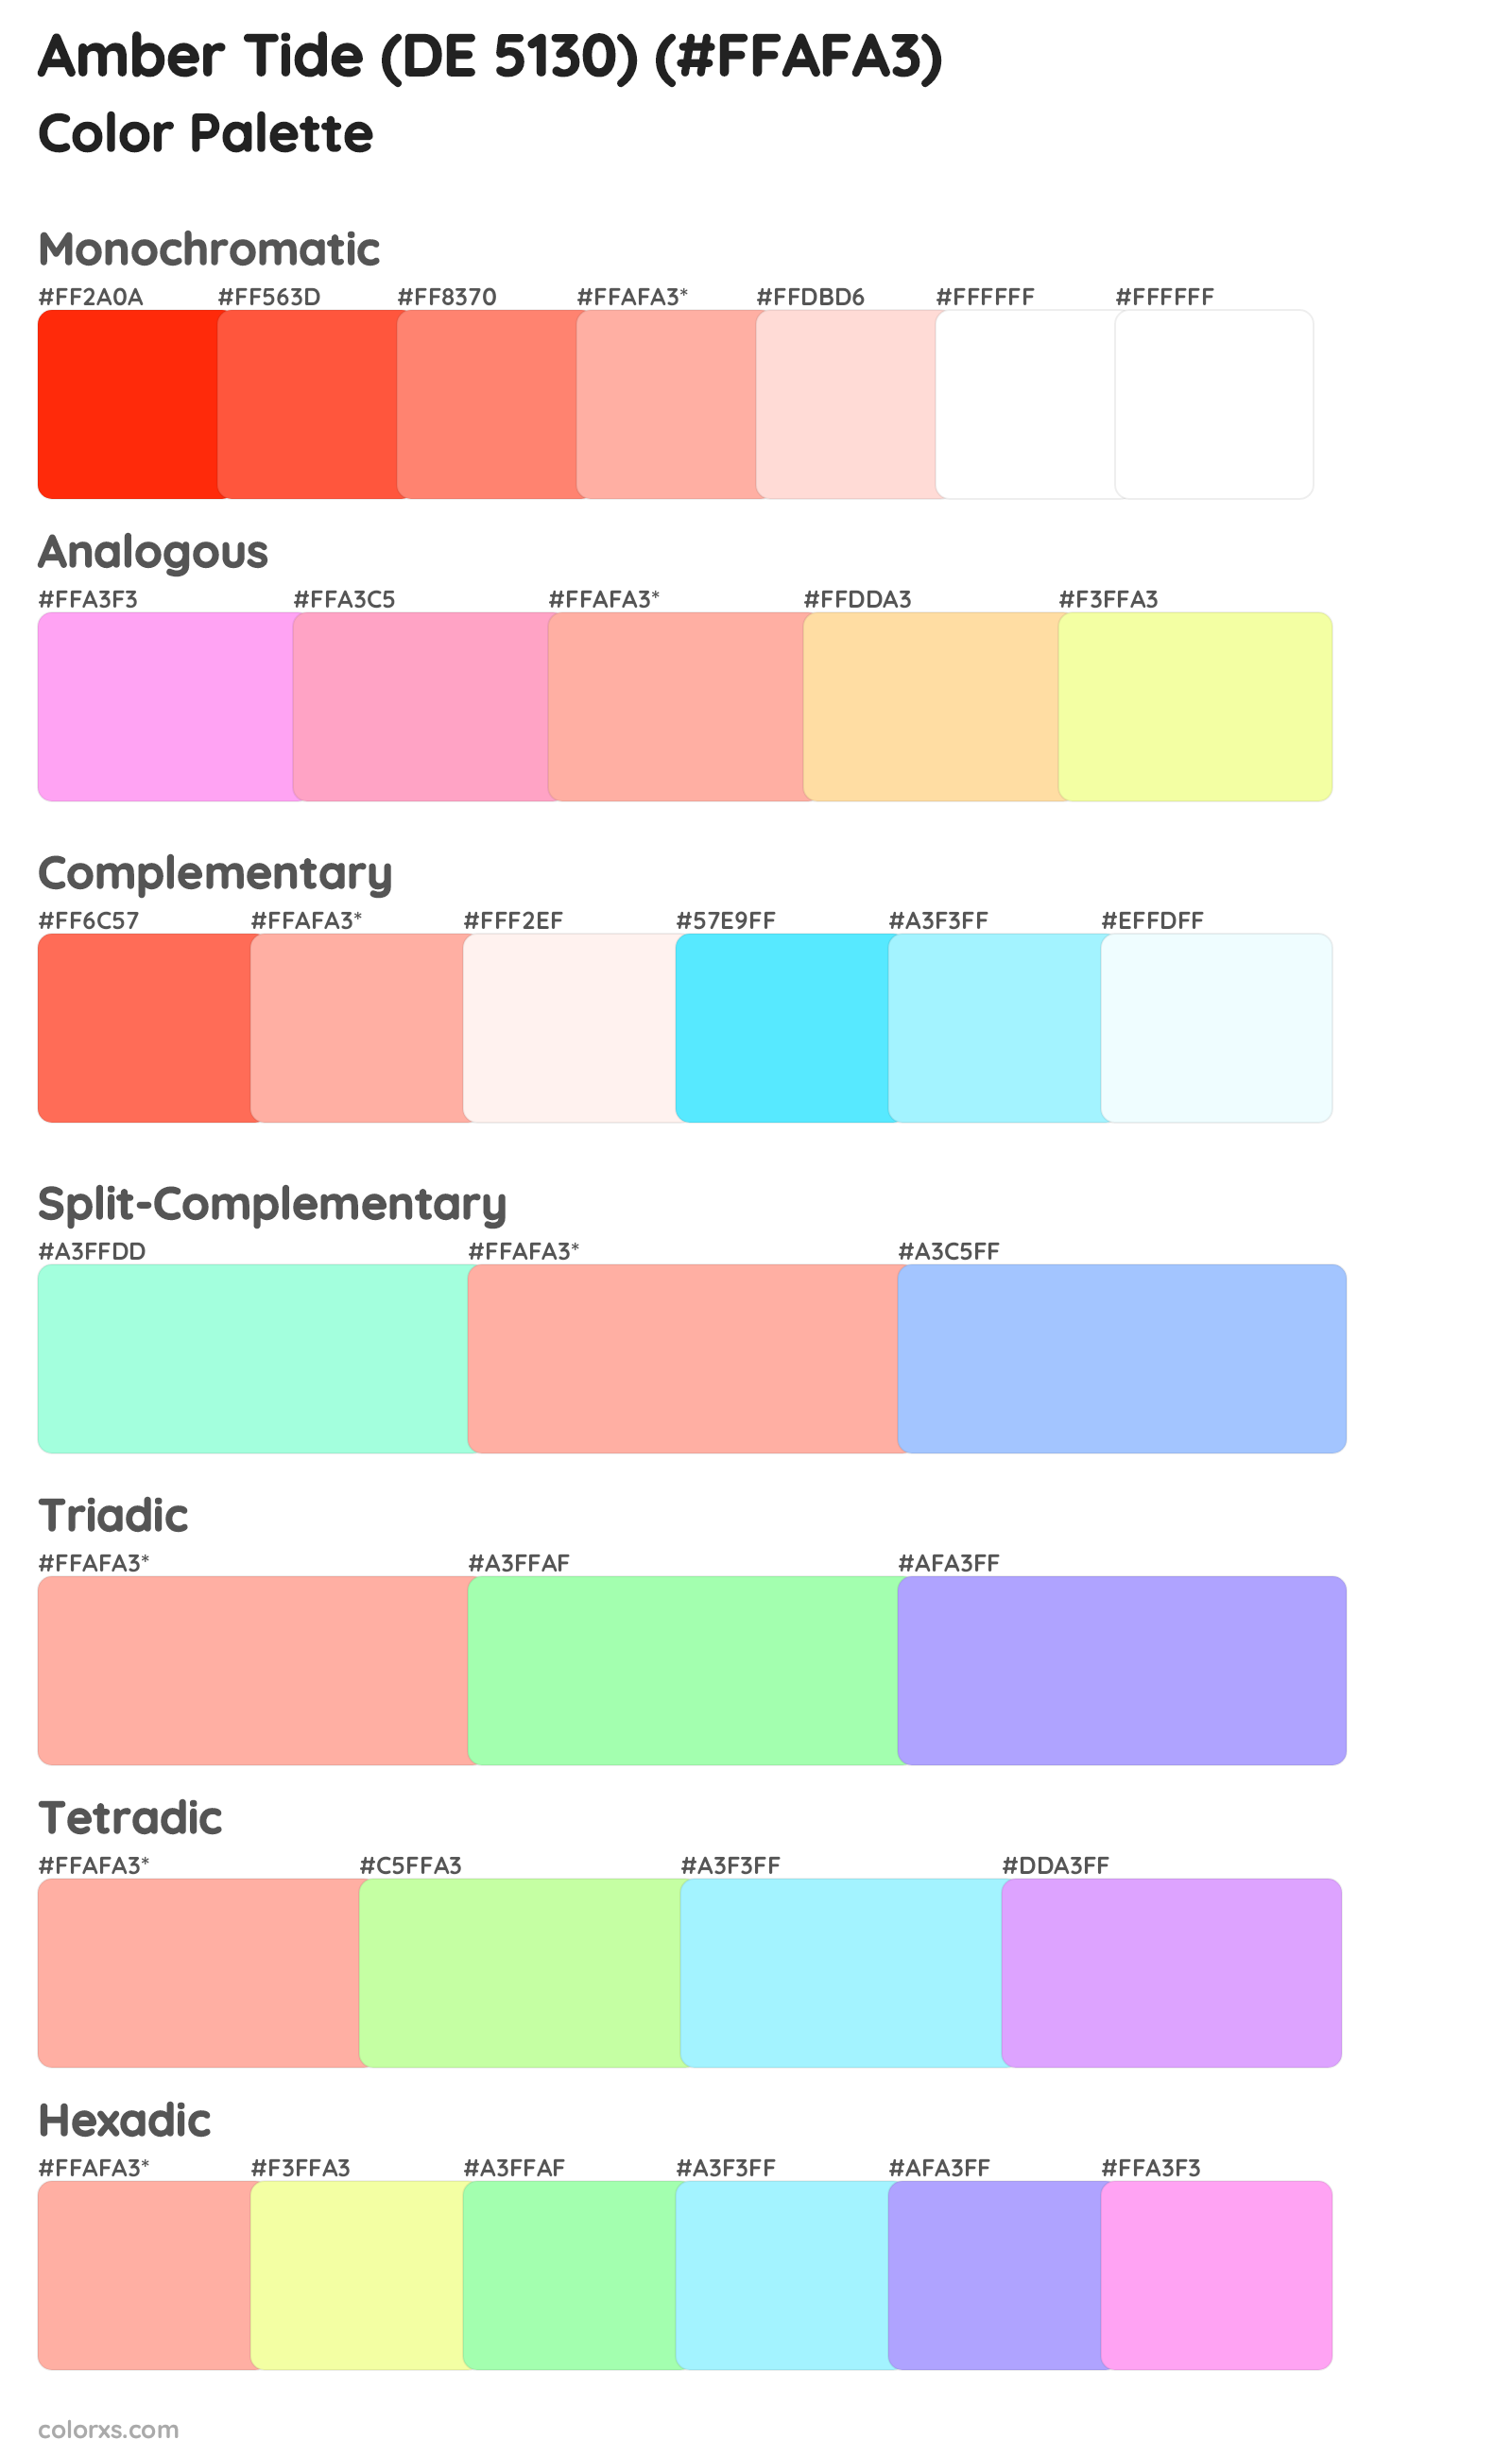 Amber Tide (DE 5130) Color Scheme Palettes